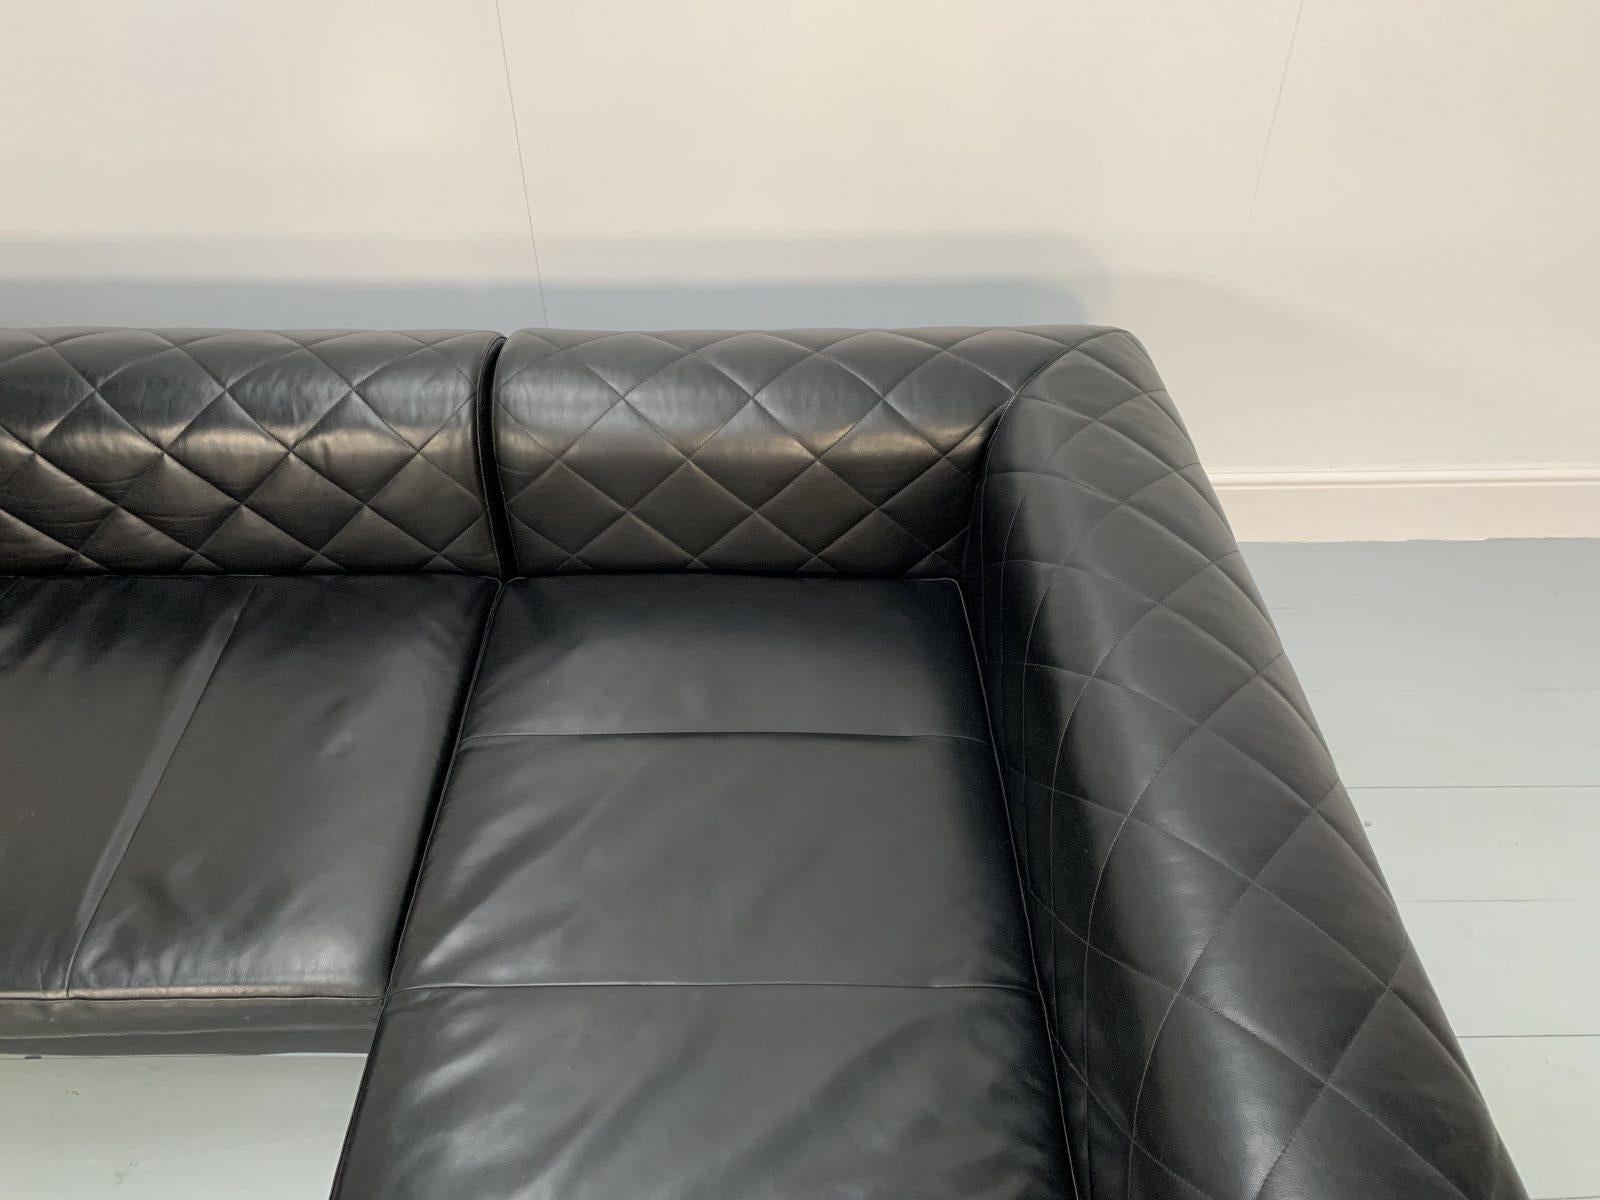 Zanotta “1320 Barocco” Sofa, L- Shape 5-Seat, in Black “Pelle” Leather For Sale 4